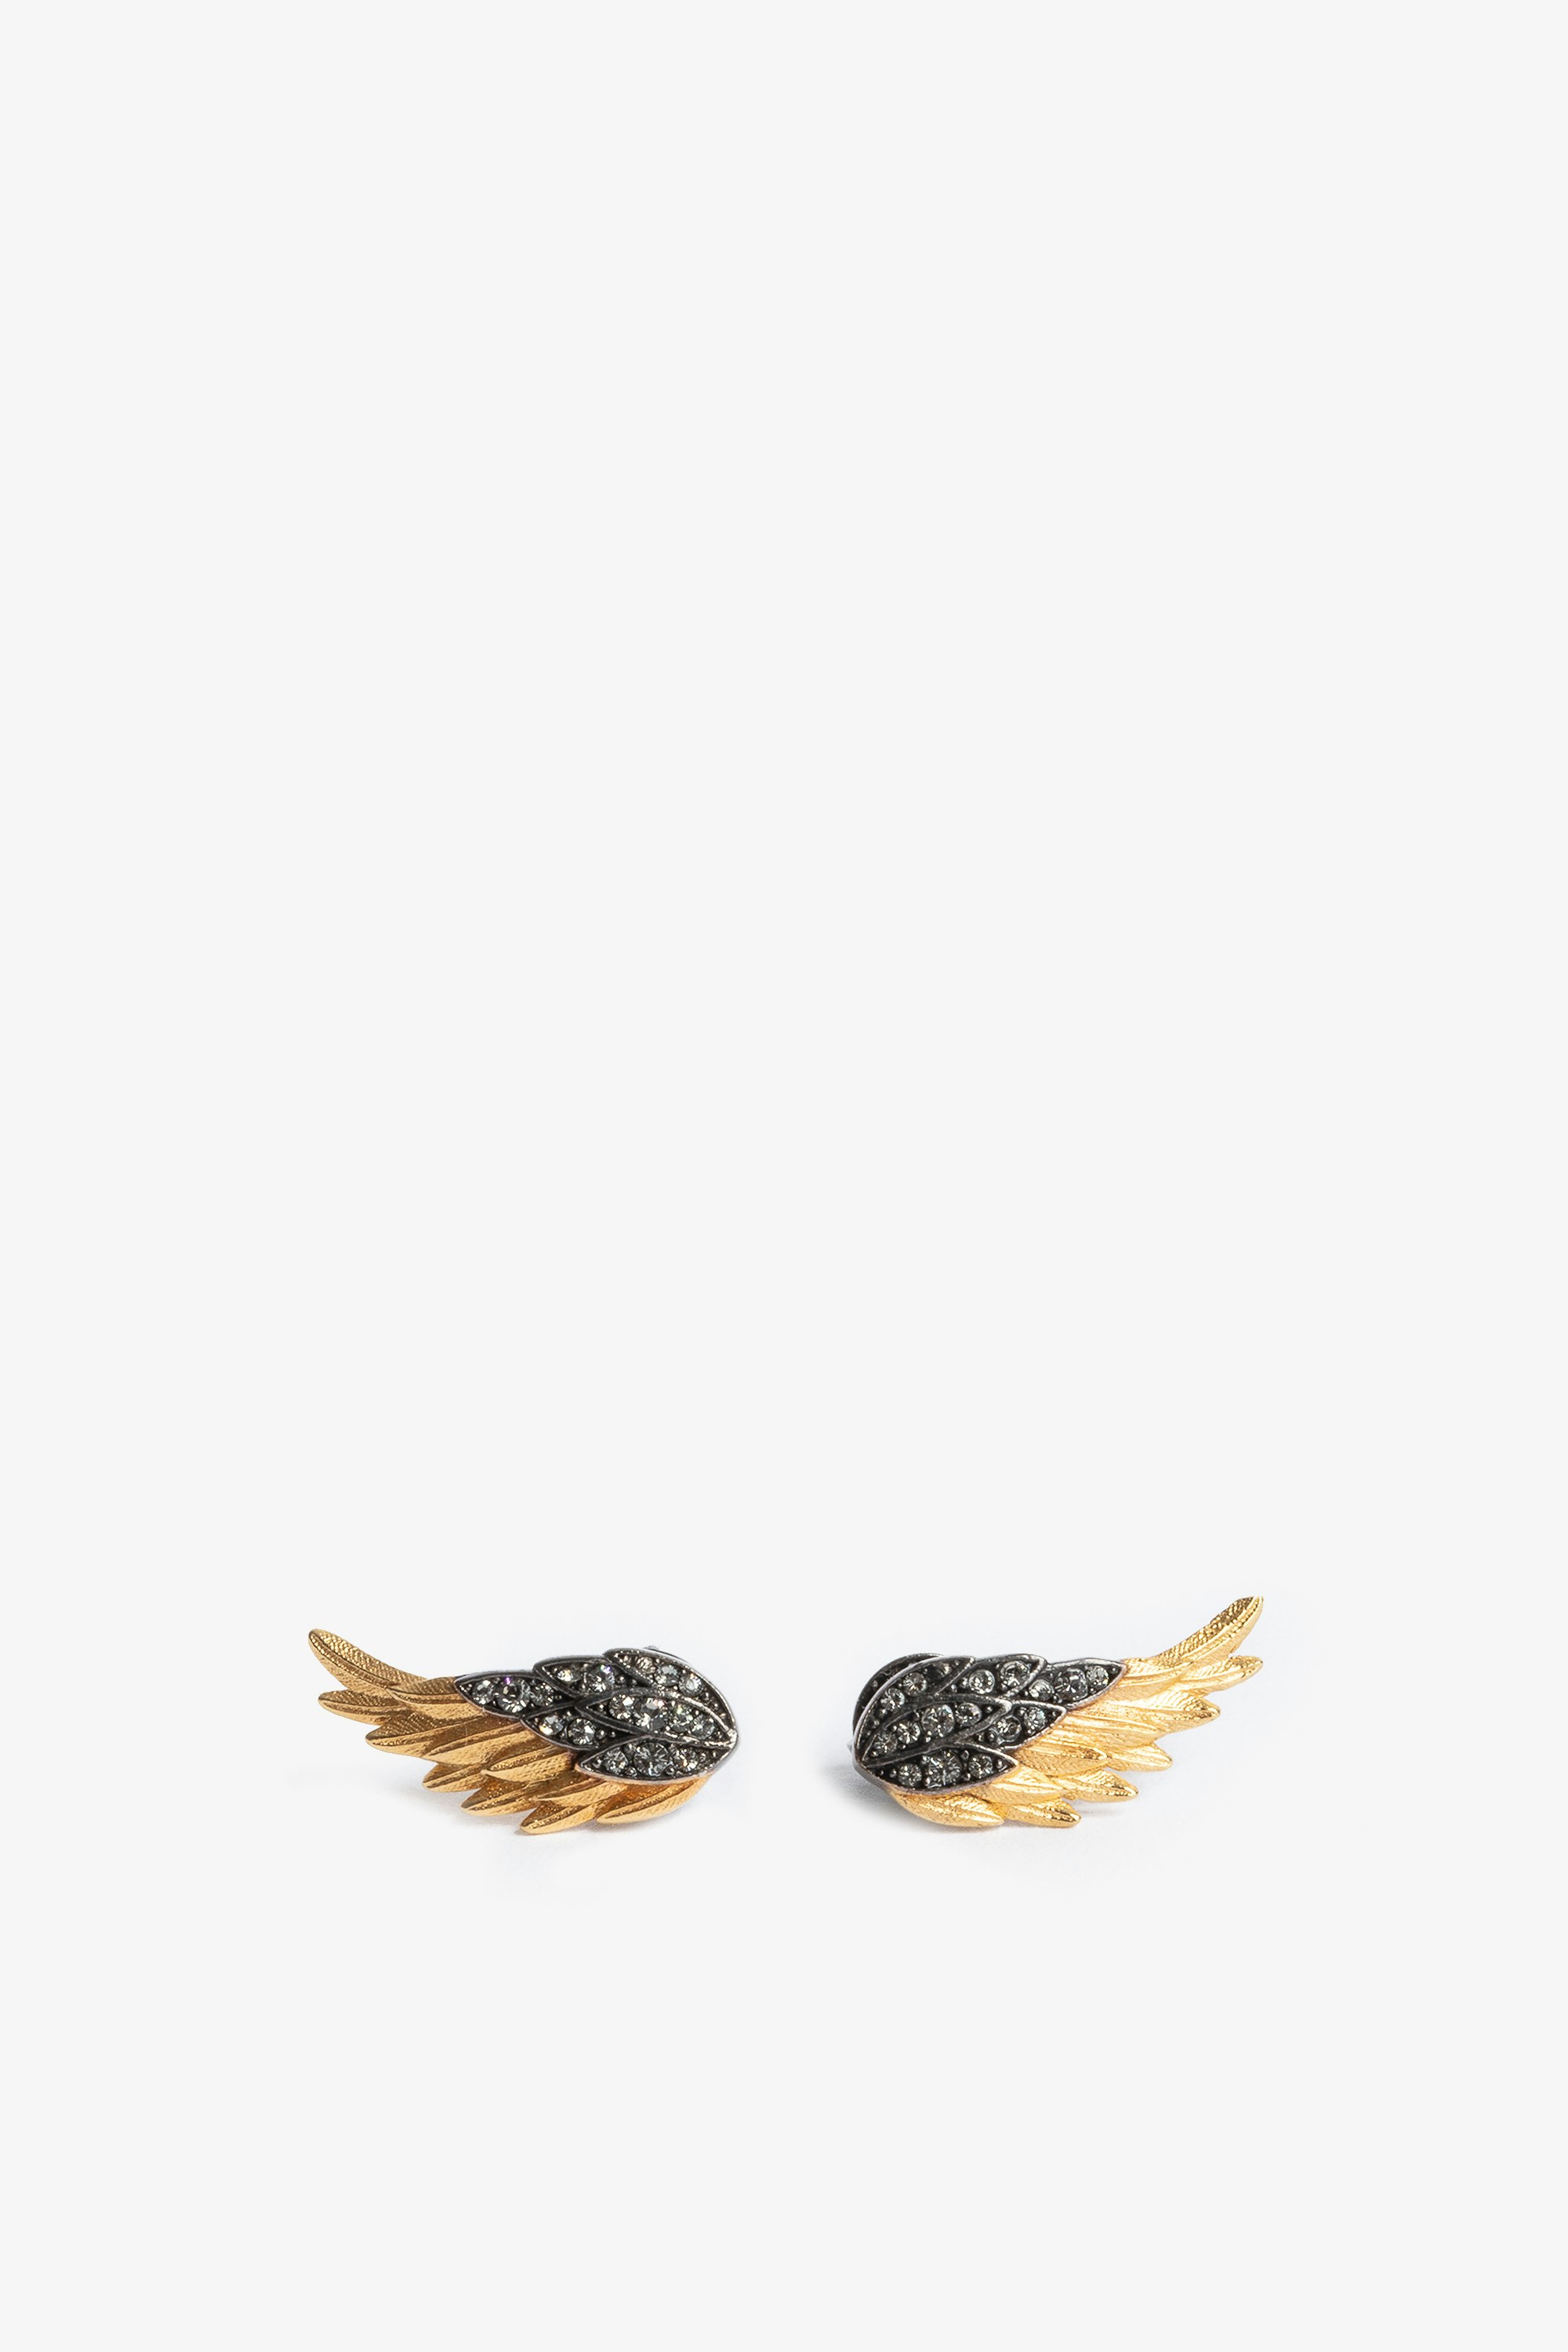 Boucles D'Oreilles Rock Feather Boucles d'oreilles en forme d'ailes en laiton noirci et doré serti de cristaux femme